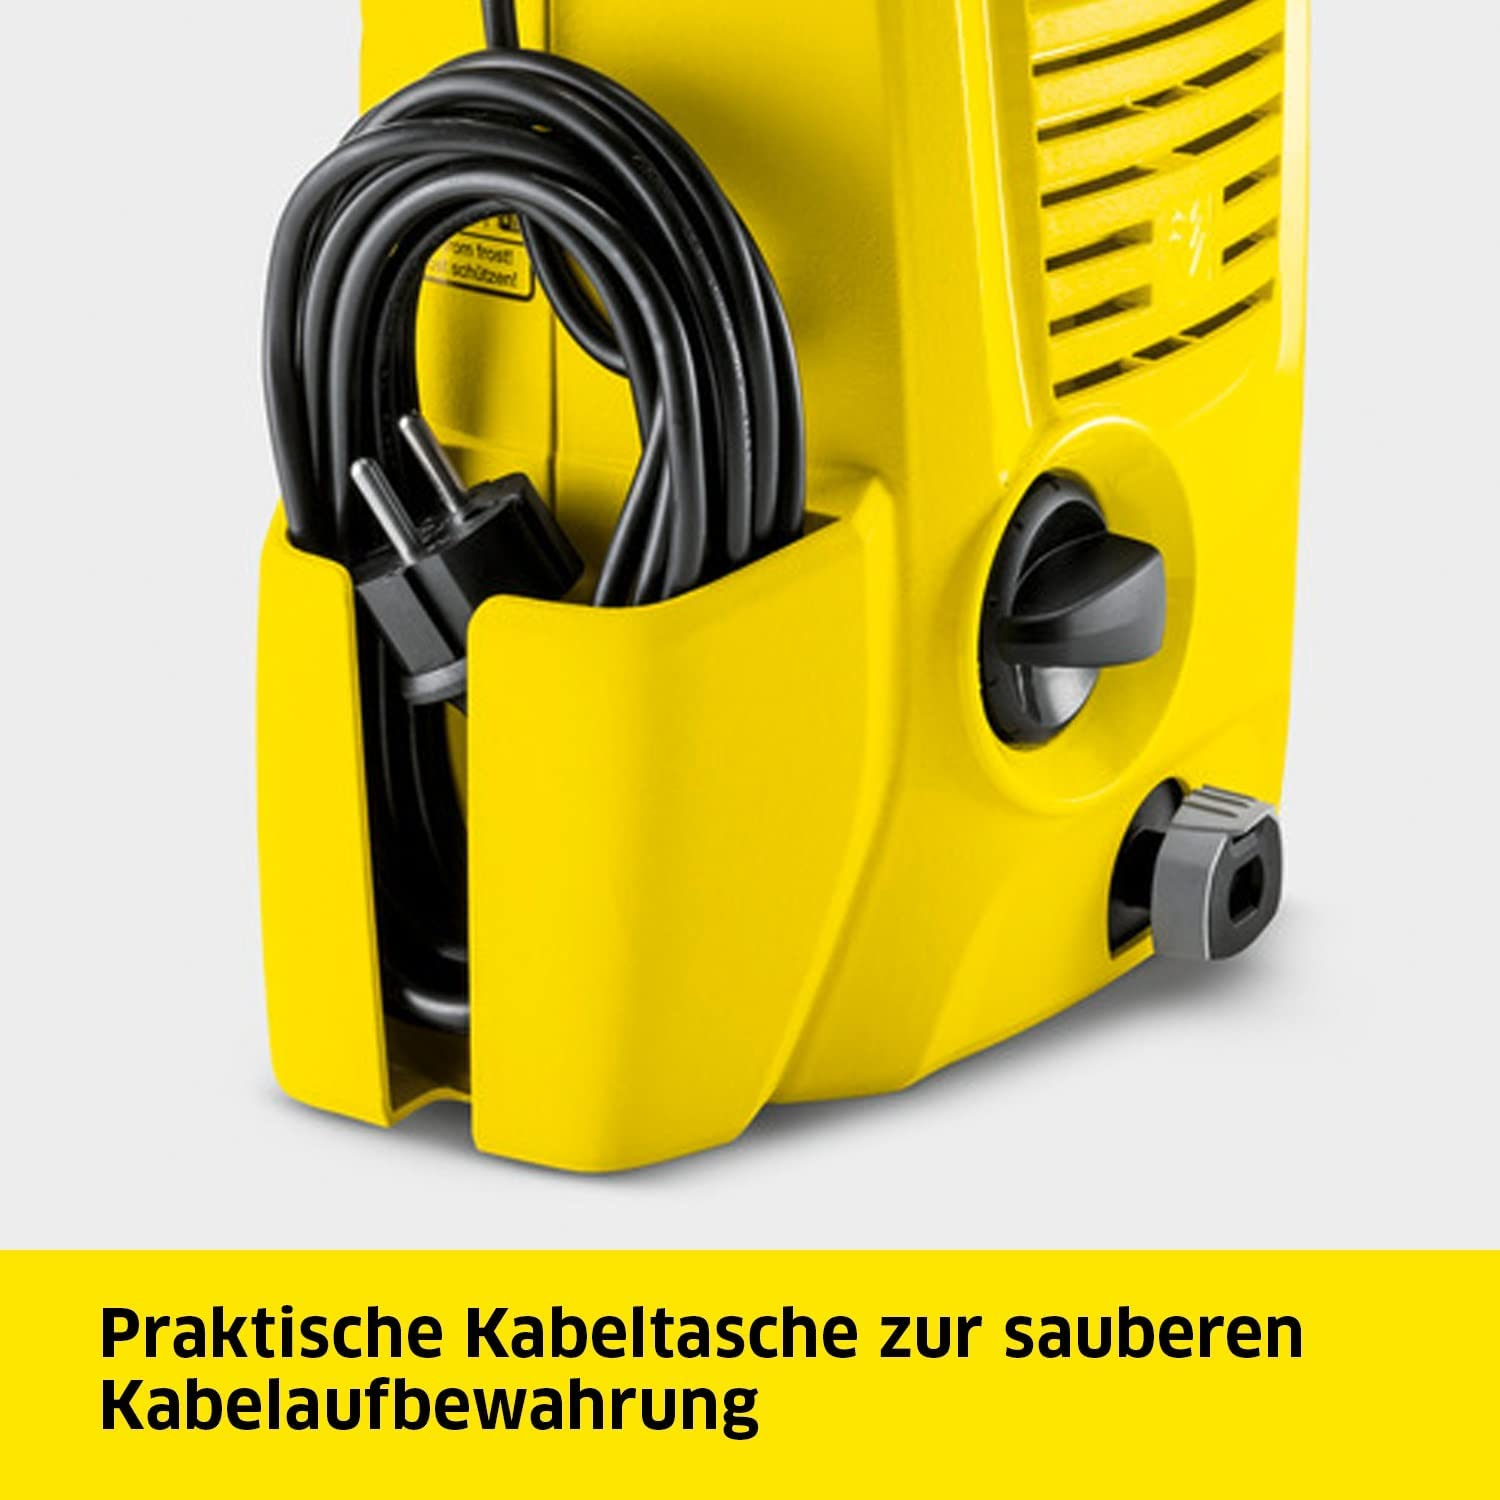 KÄRCHER K 2 Universal Hochdruckreiniger, Gelb Edition